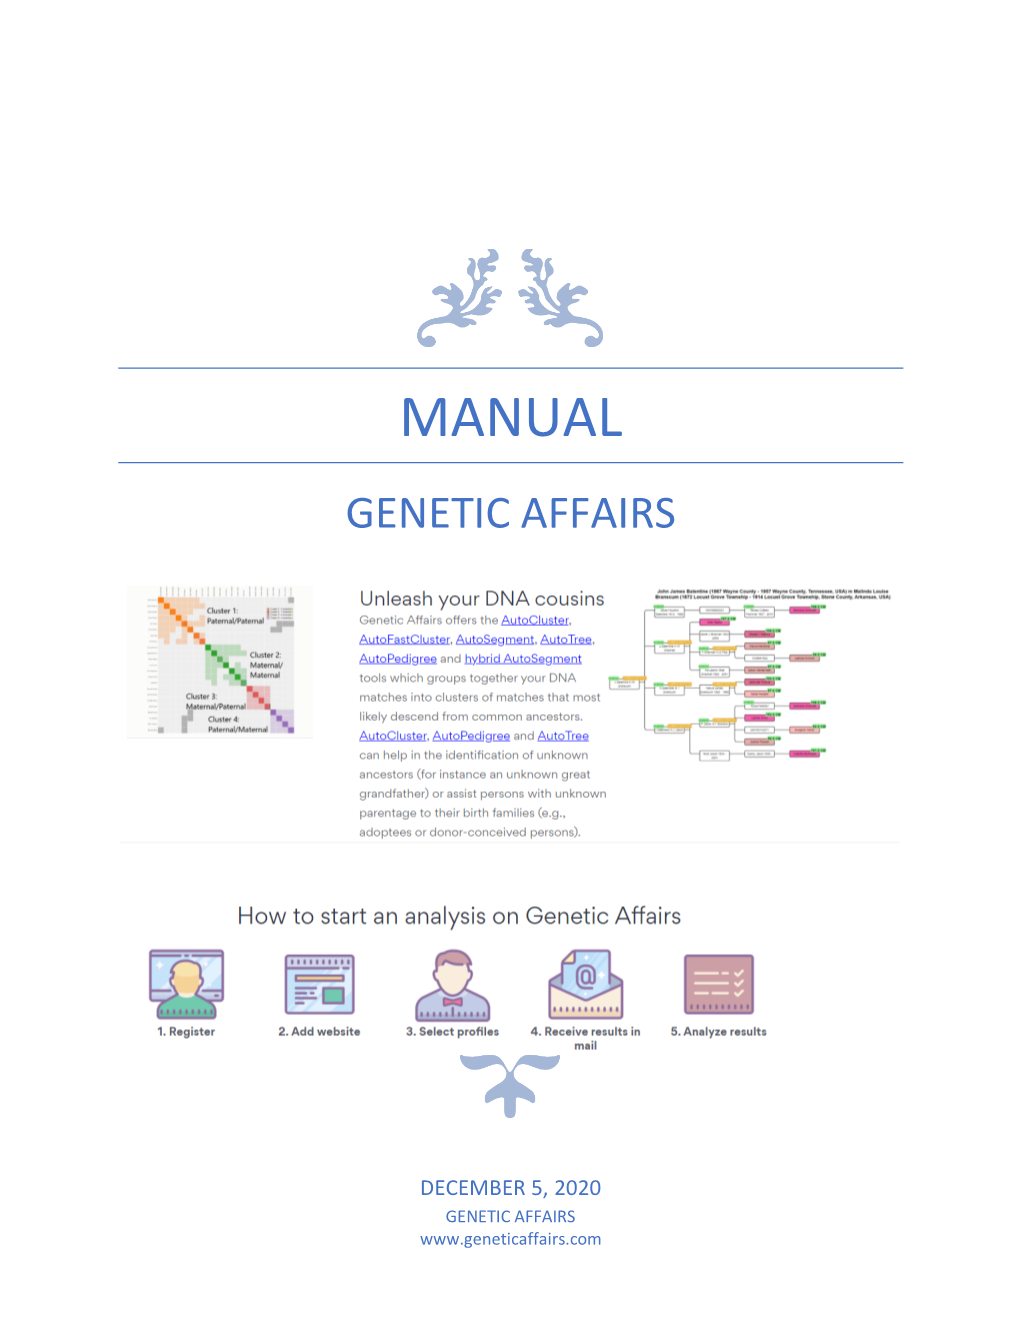 Manual Genetic Affairs